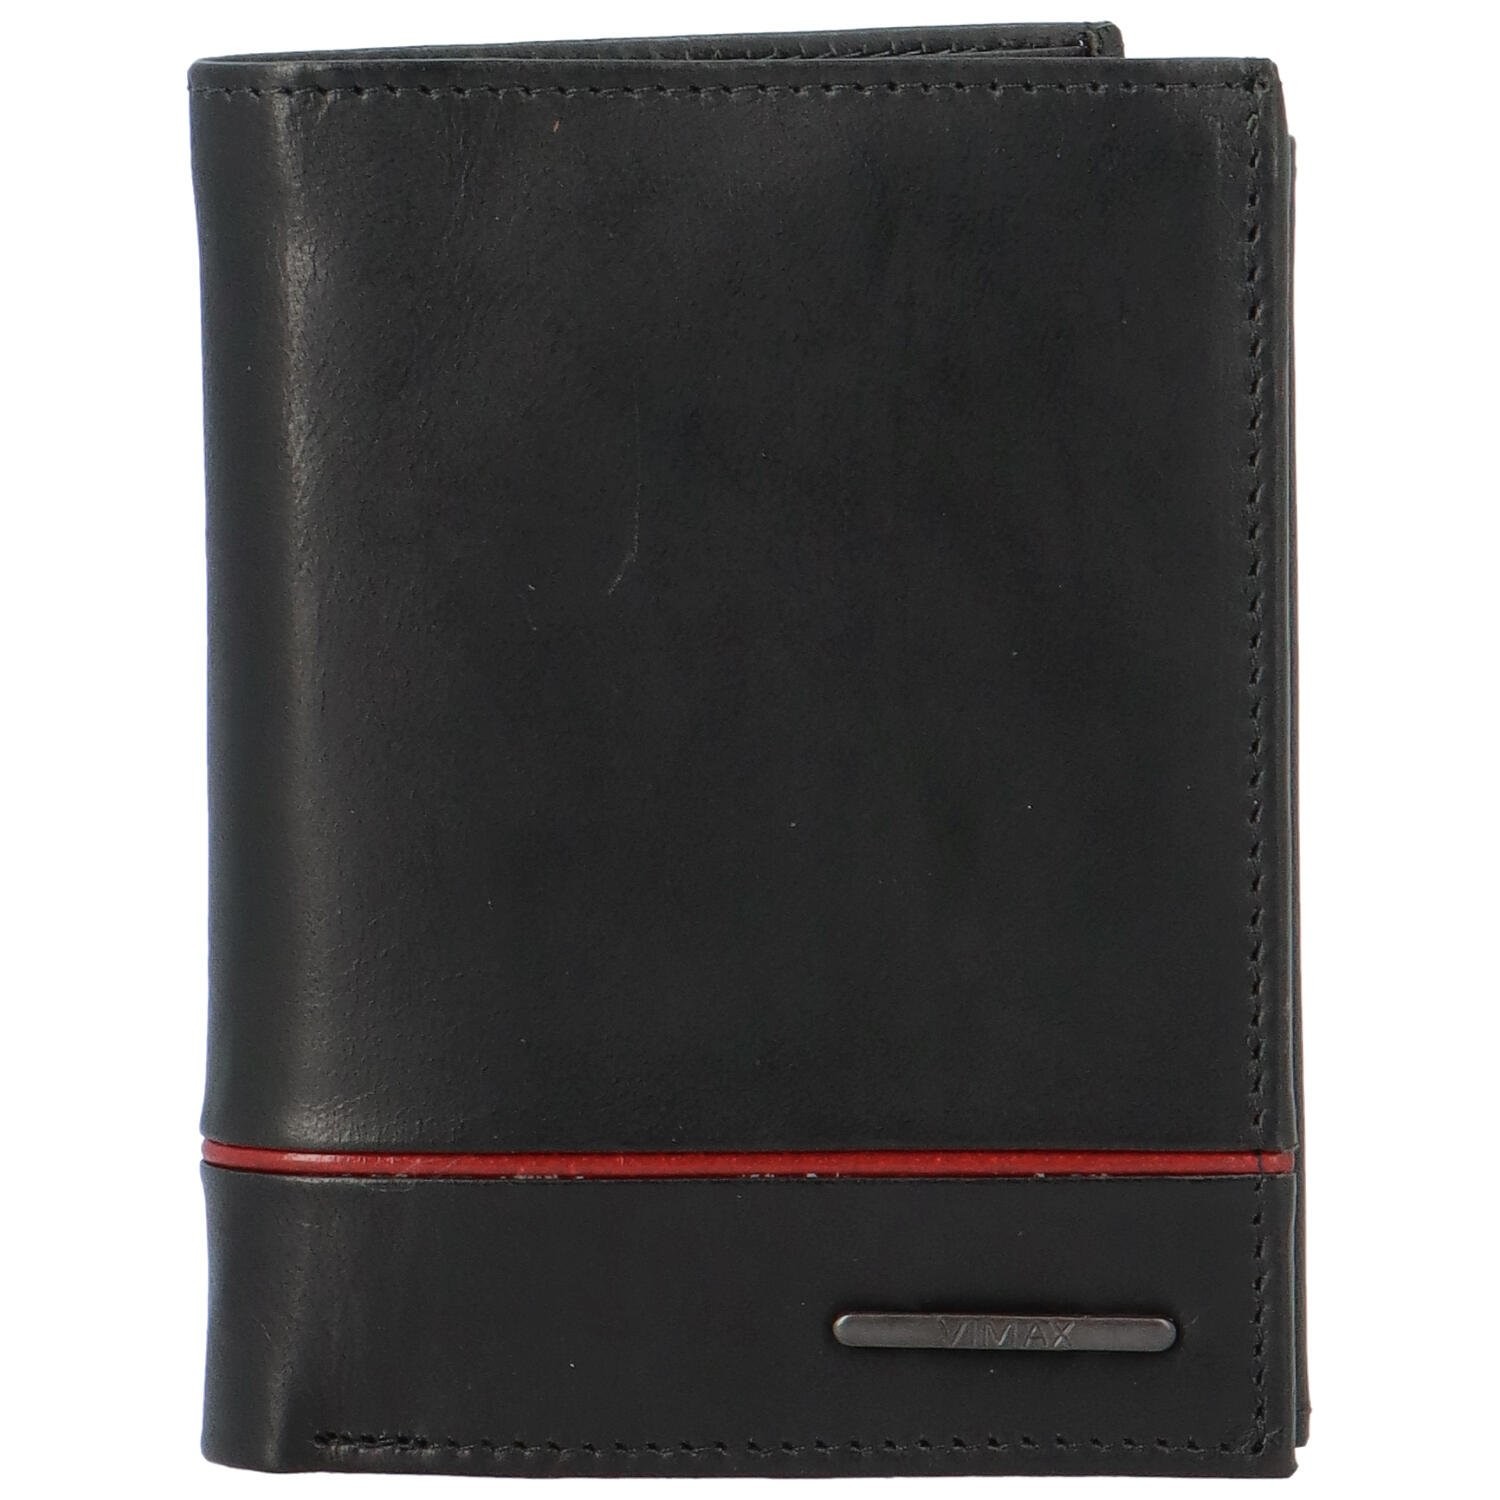 Pánská kožená peněženka černá - Vimax Xerons černá